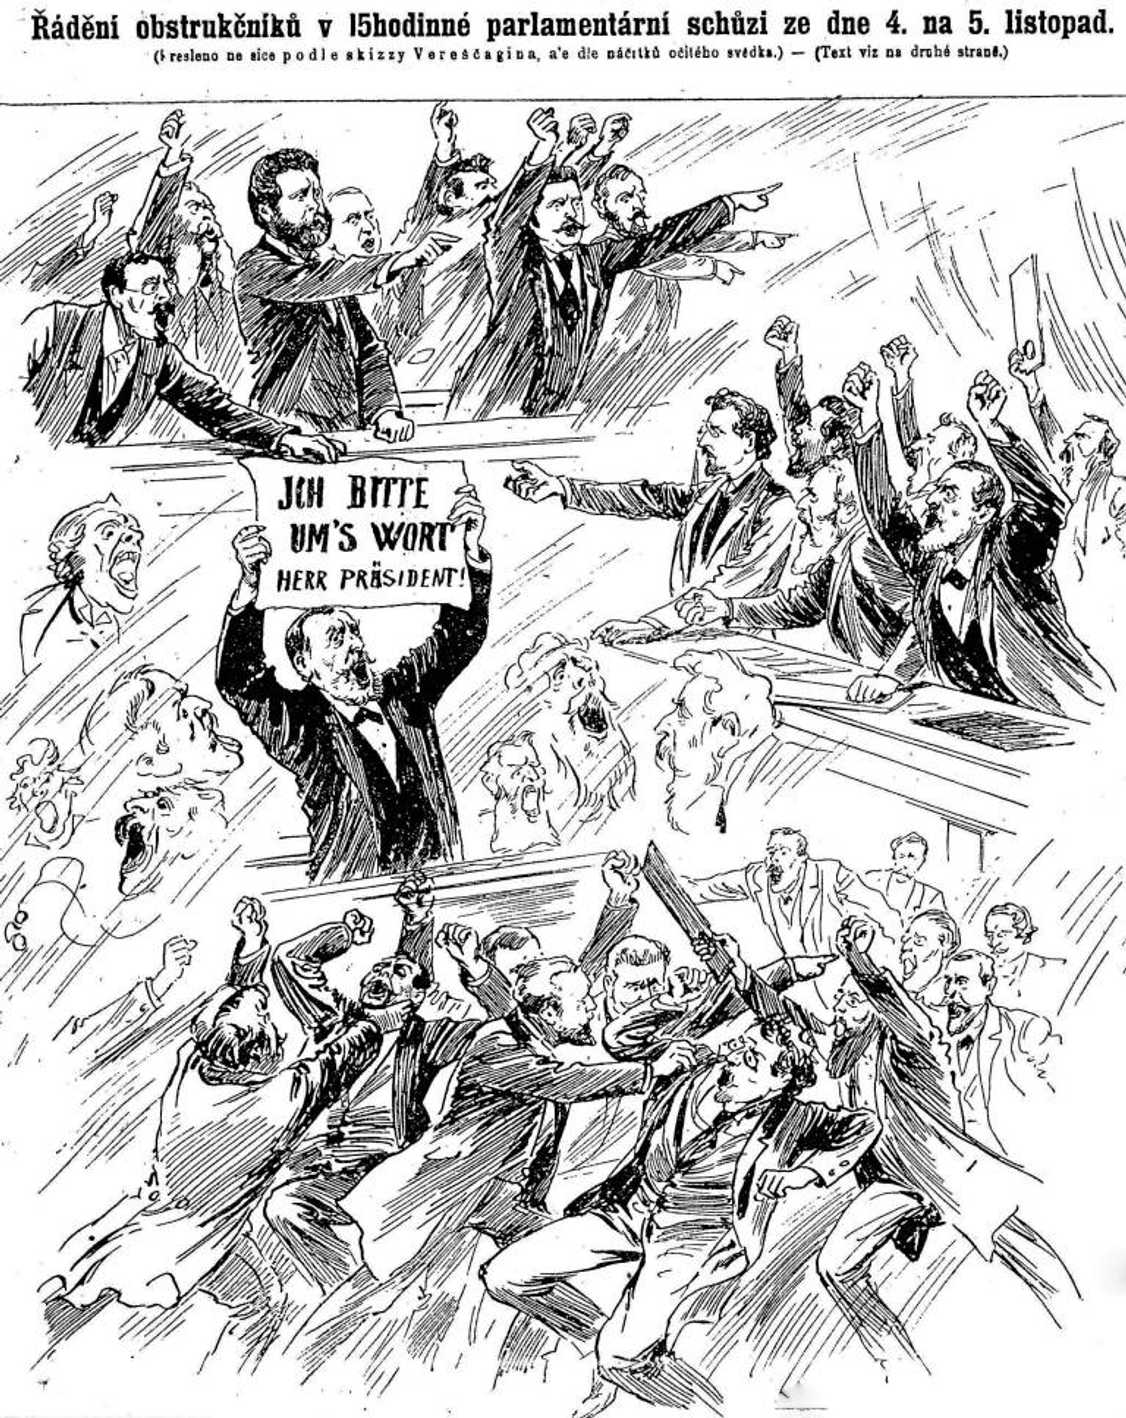 Řádění obstrukčníků&#8230; (Pražský illustrovaný kurýr (7. listopadu 1897)
